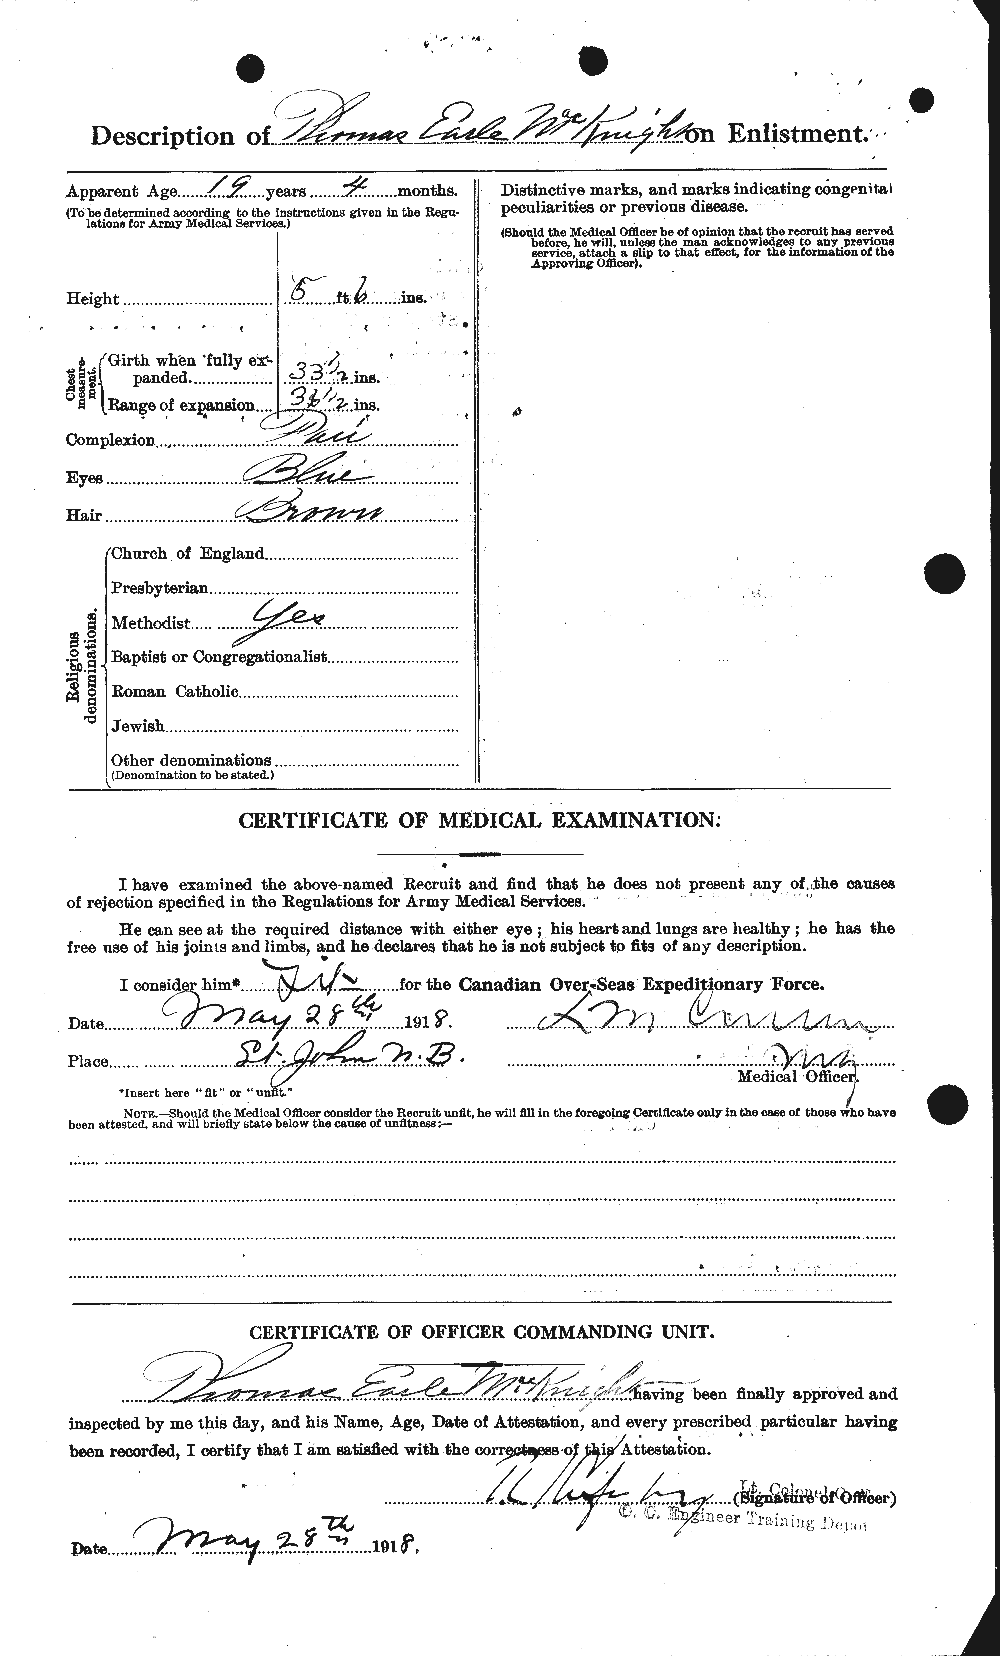 Dossiers du Personnel de la Première Guerre mondiale - CEC 530759b